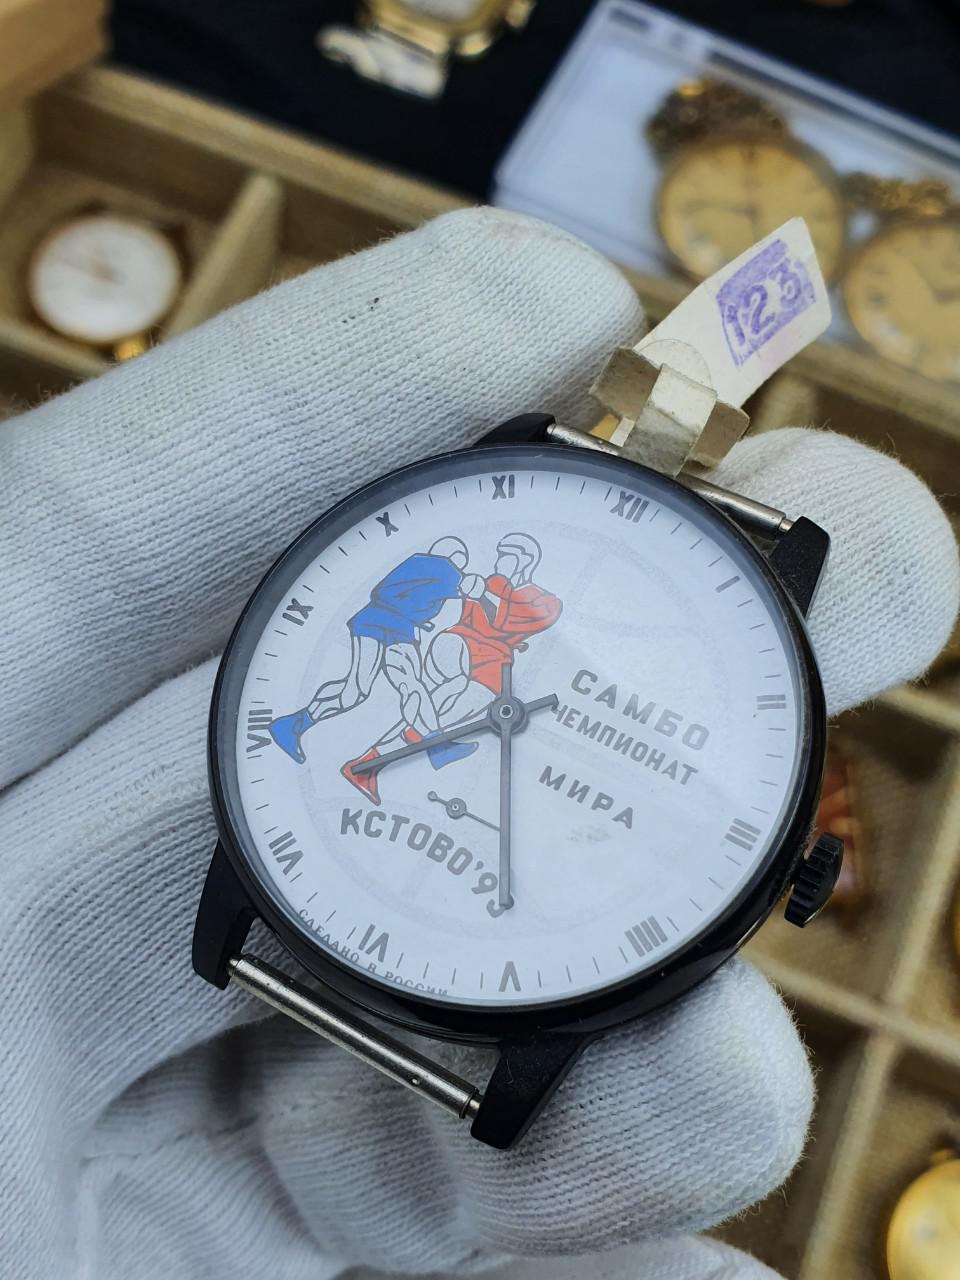 Đồng hồ Pabeda Sambo phiên bản kỷ niệm đại hội thể thao võ thuật 1993 tại KCTOVO Liên Xô